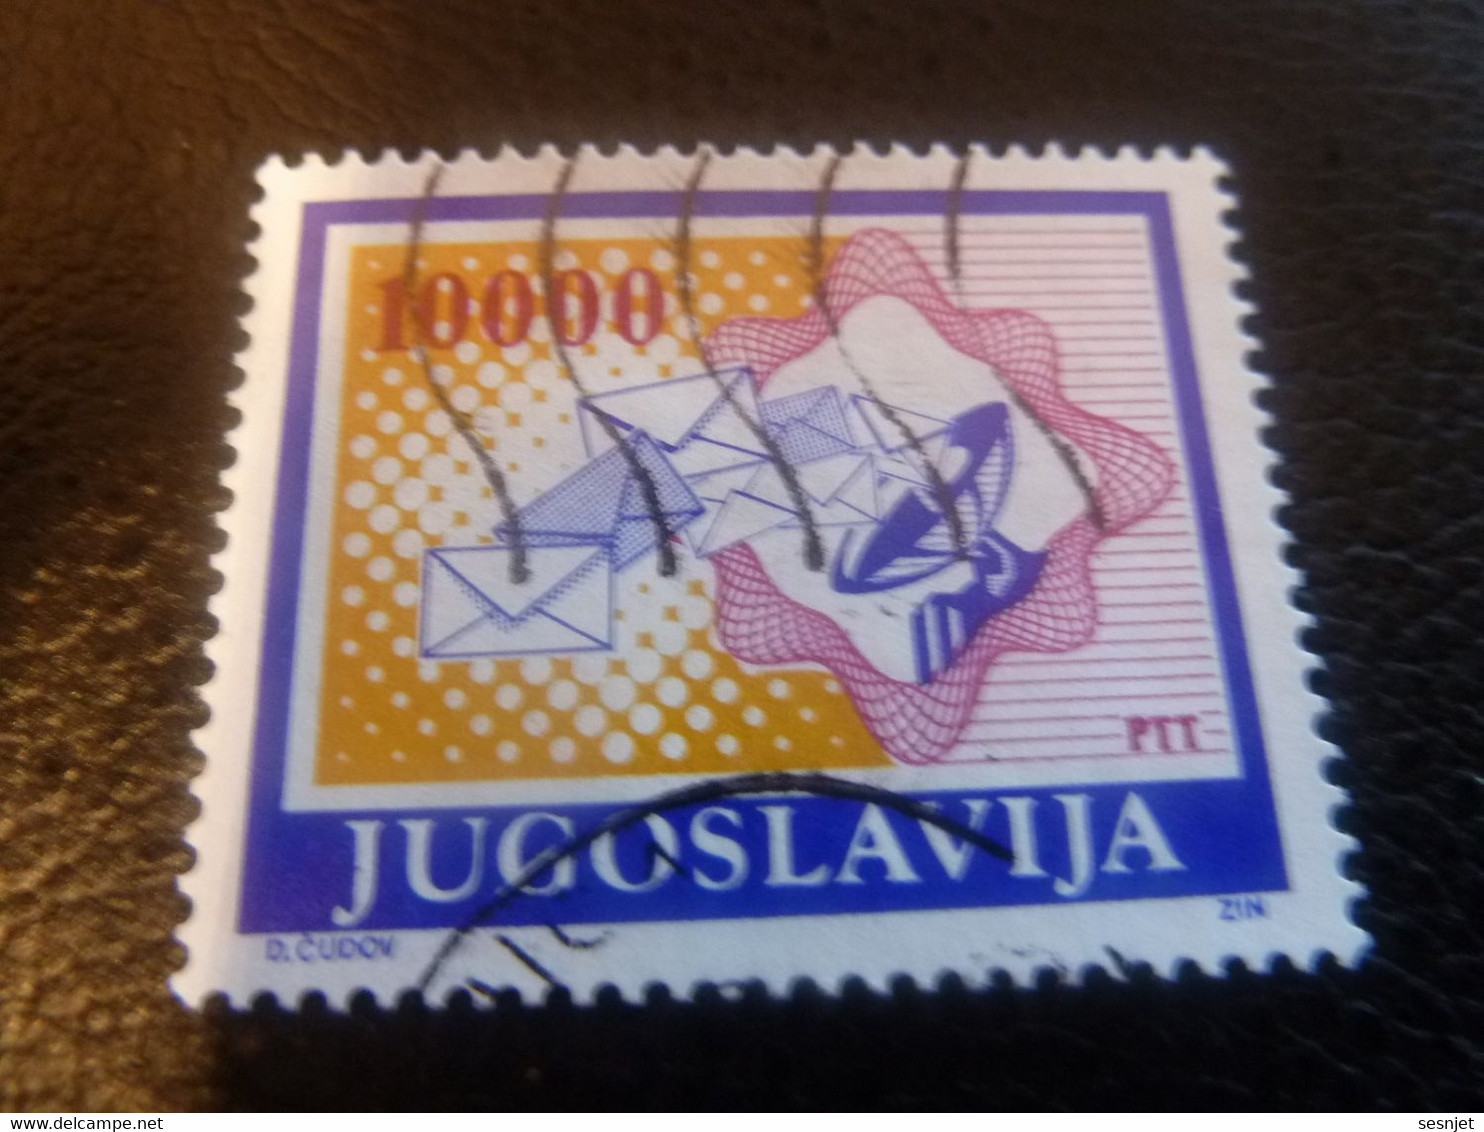 Ptt - Jugoslavija - D Cudov - Val 10000 - Multicolore - Oblitéré - - Oblitérés